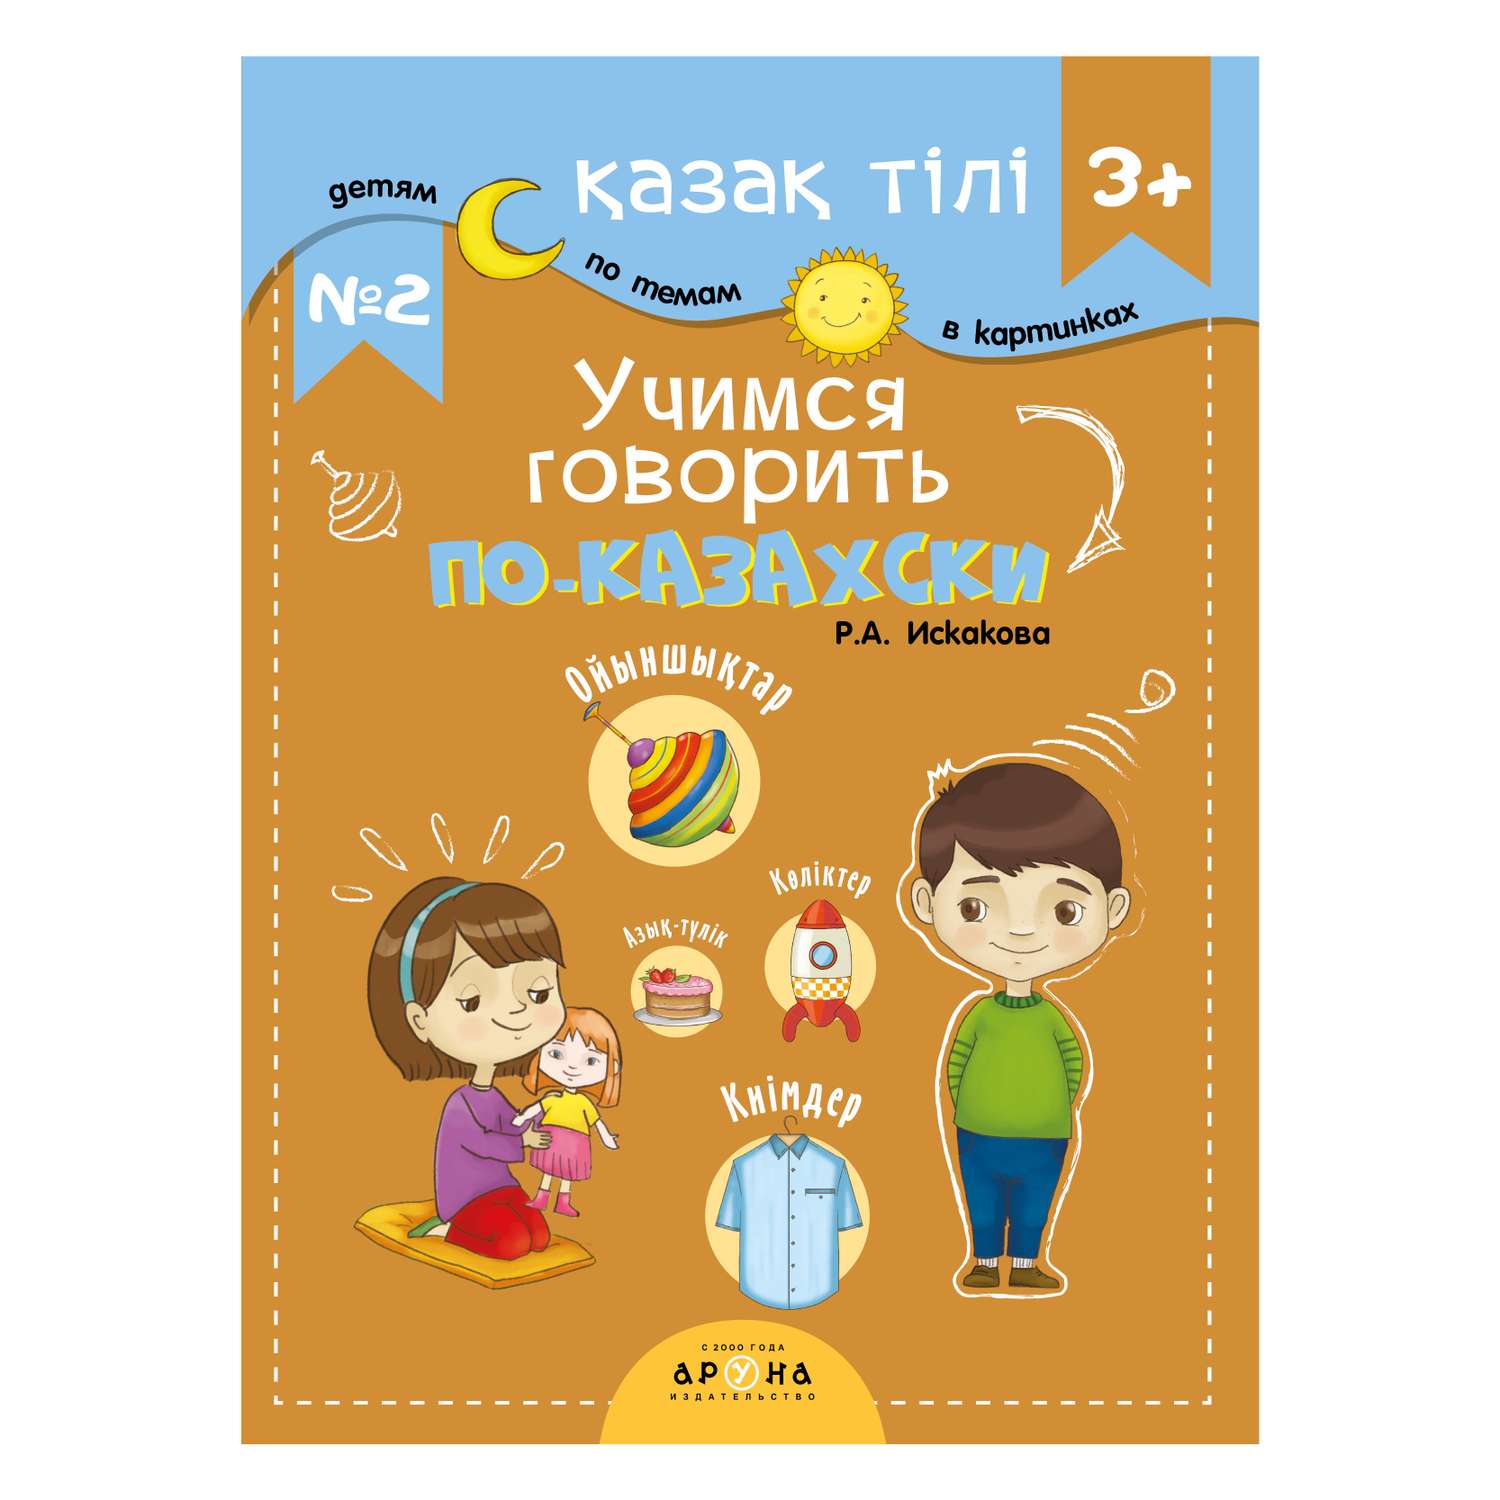 Книга Разговорник 3+ №2 Казахский язык - фото 1